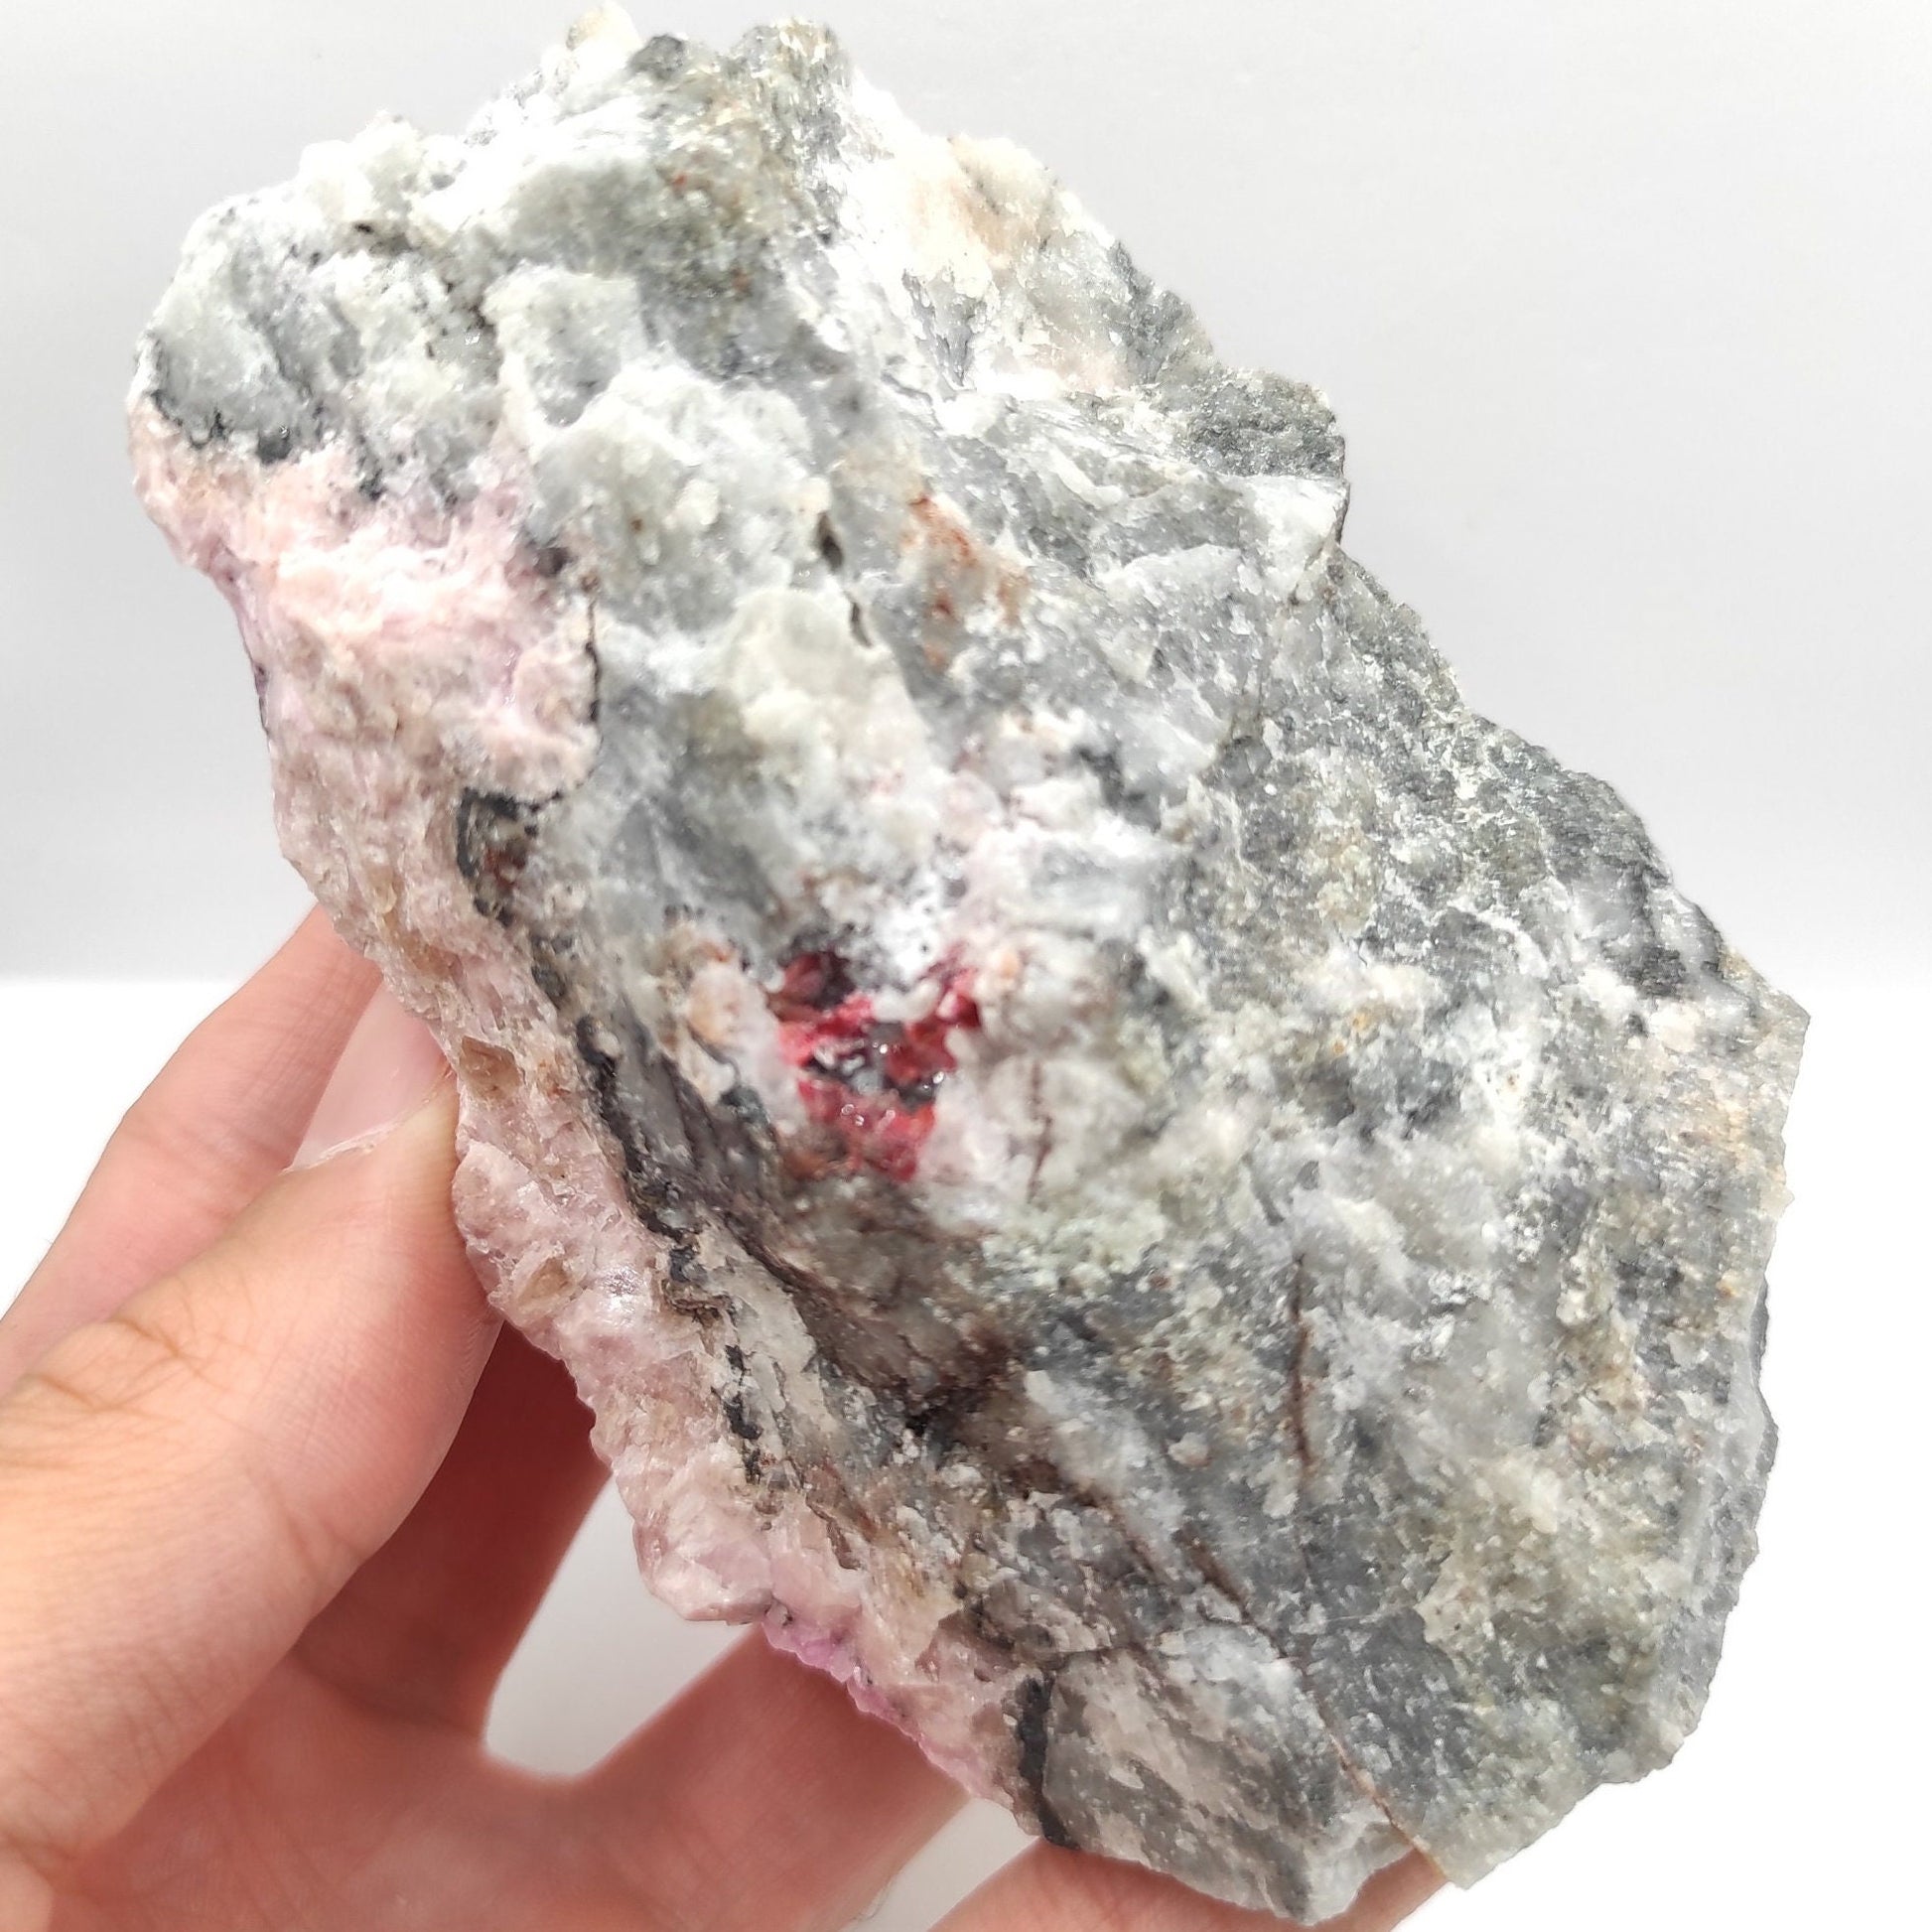 372g Cobalto Calcite - Pink Cobalt Calcite from Bou Azzer, Morocco - Salrose Stone - Cobaltocalcite Mineral Specimen - Pink Calcite Crystal